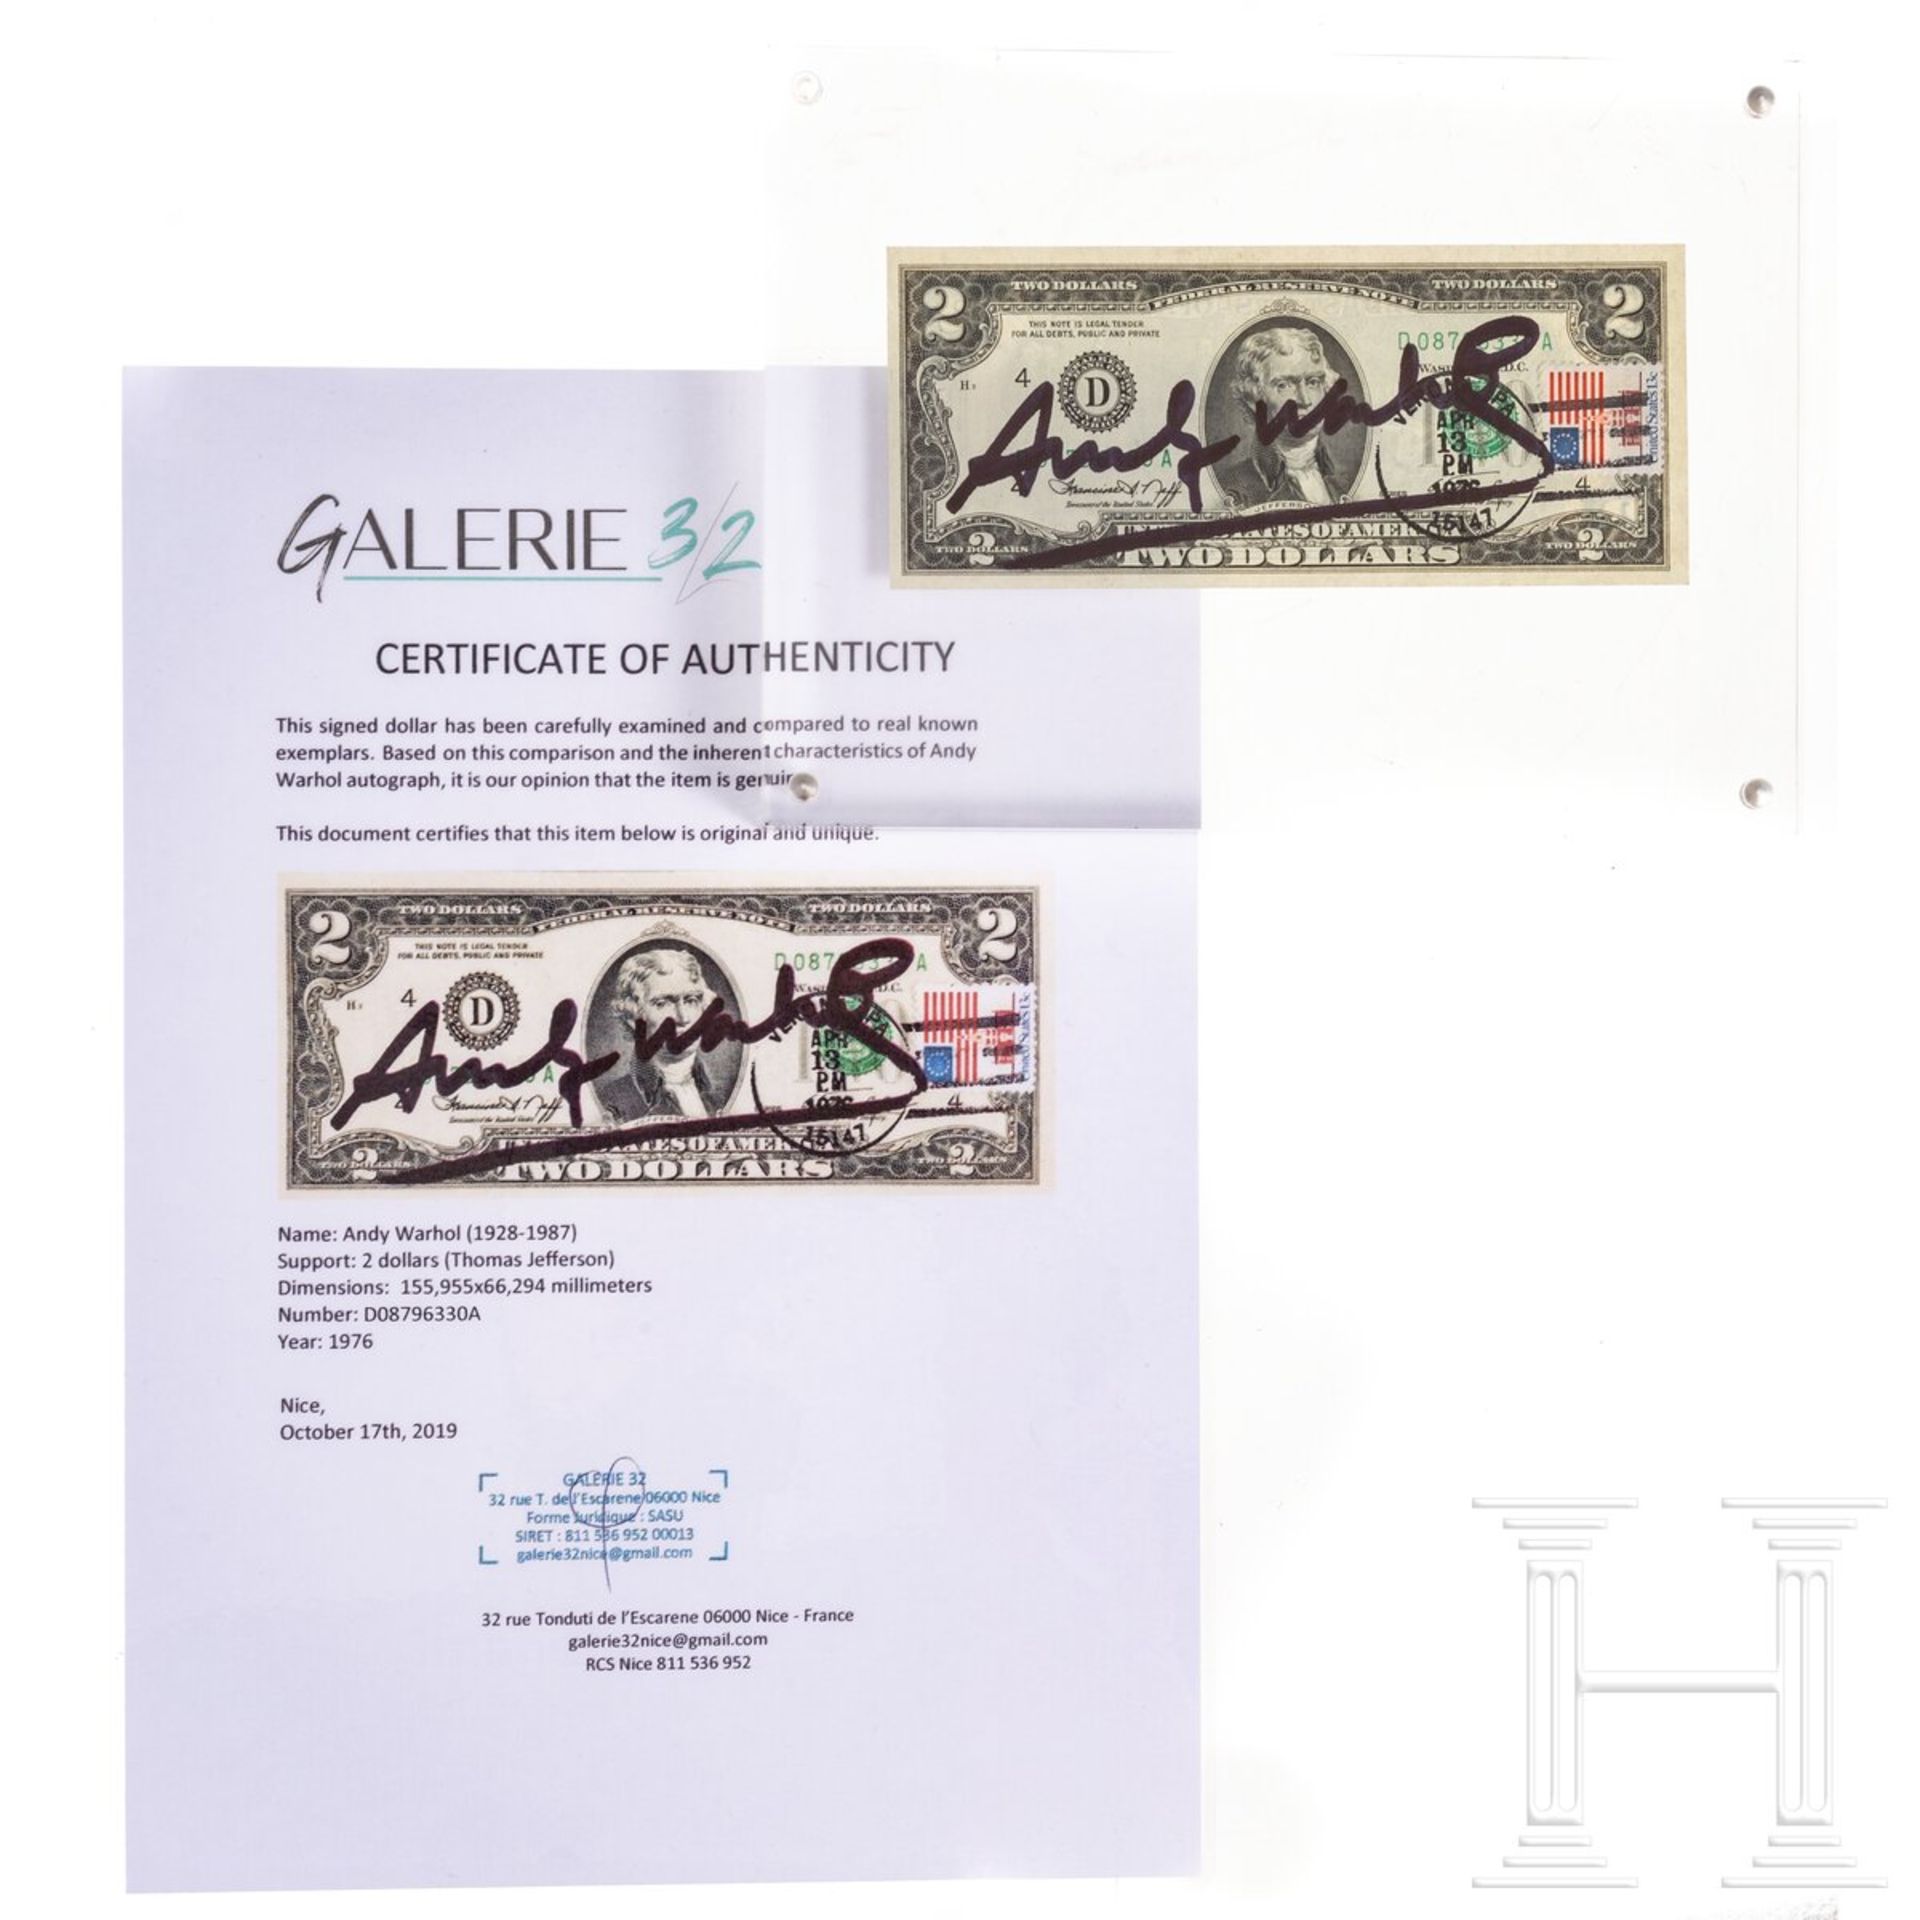 Zwei-Dollar-Schein, signiert "Andy Warhol", 1976 - Image 3 of 3